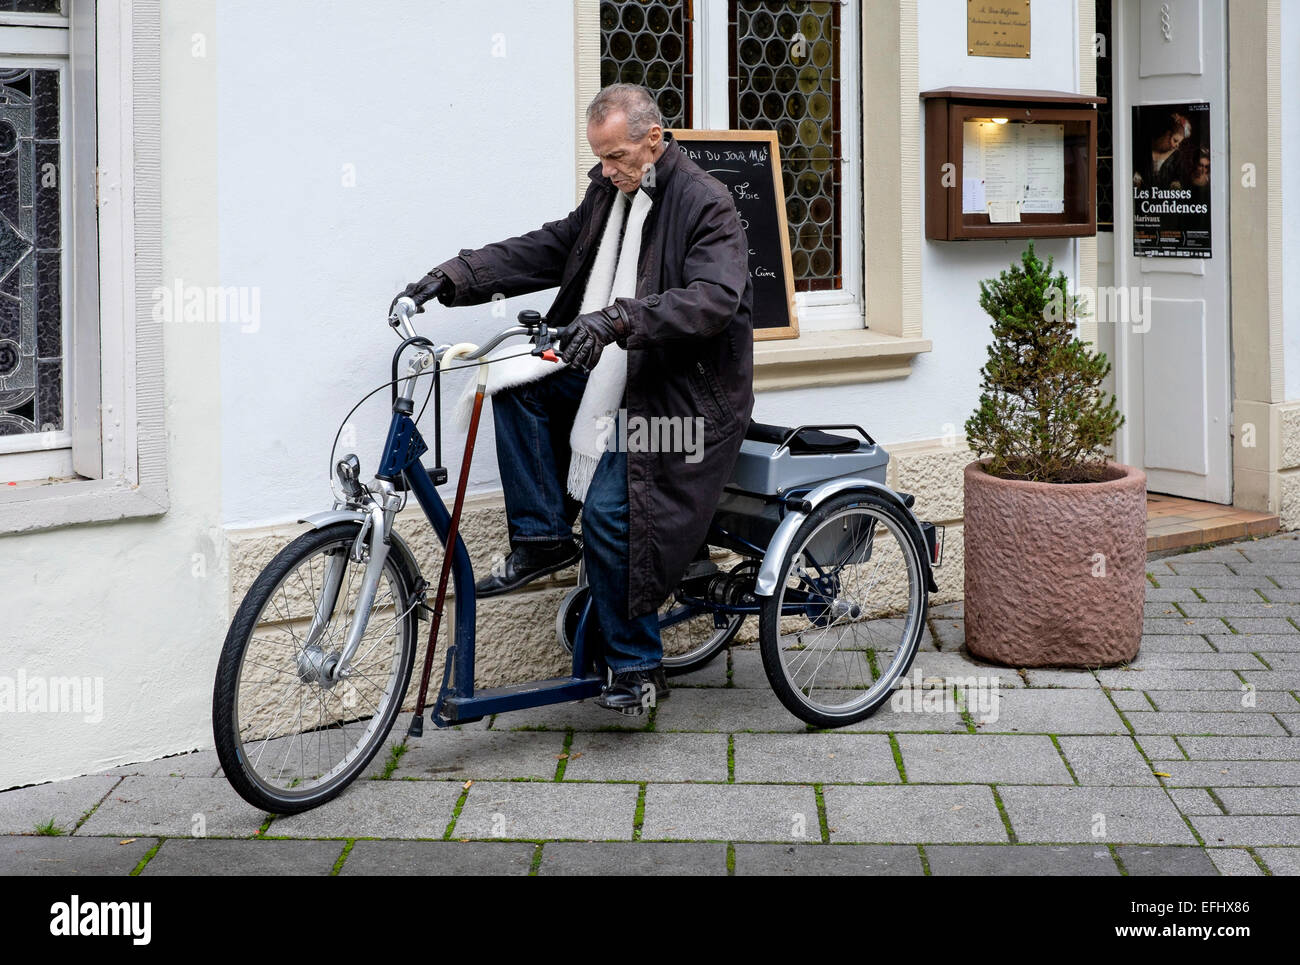 Un homme handicapé âgé qui roule sur un vélo tricycle Banque D'Images